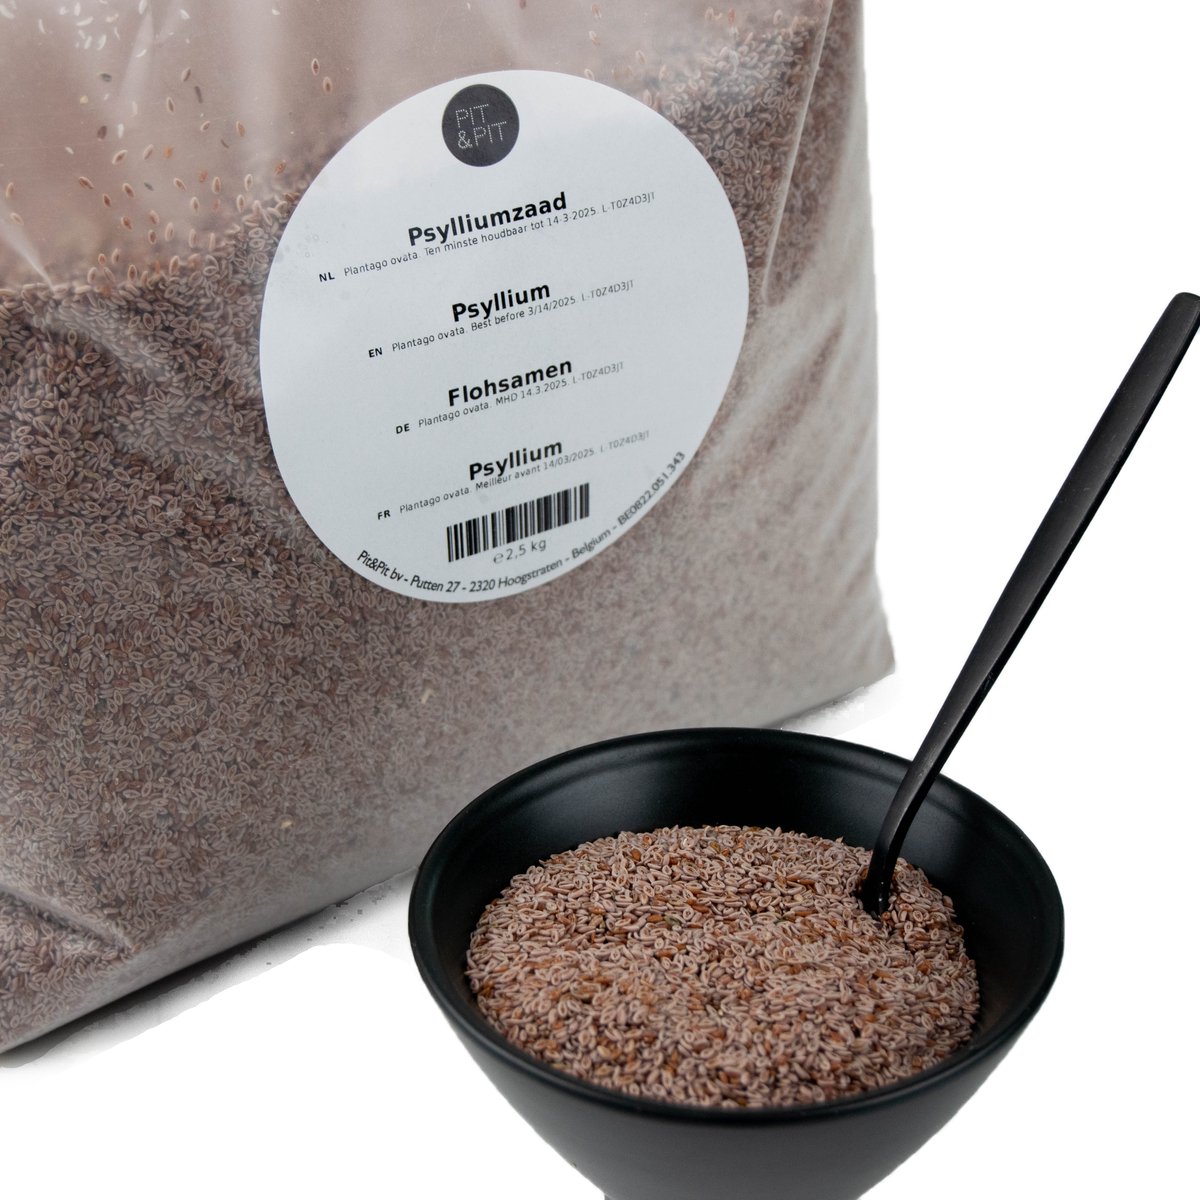 Pit&Pit - Psylliumzaad 2.5kg - Rijk aan vezels - Voor glutenvrij bakken - Pit&Pit